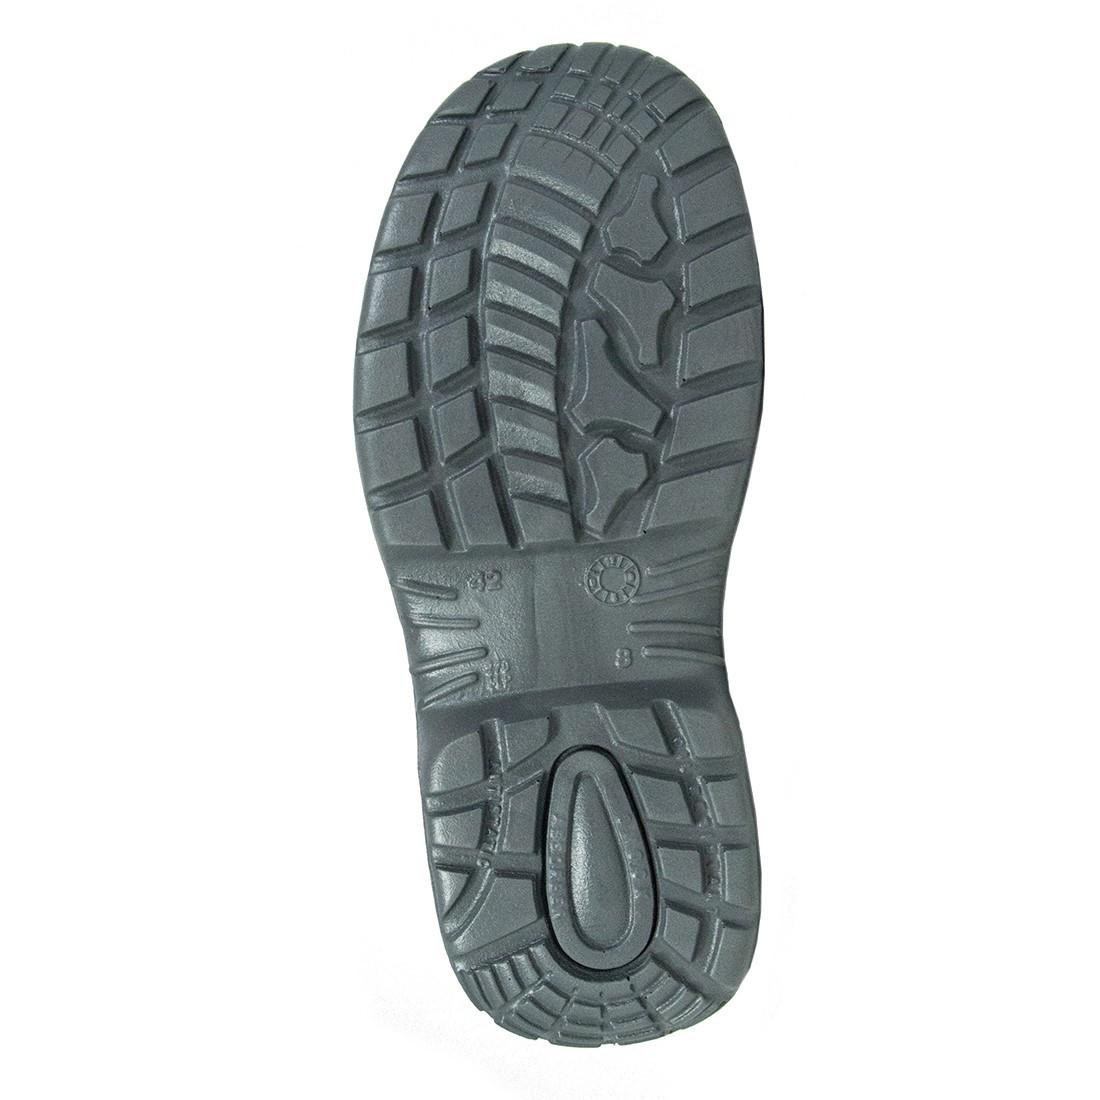 Tribeca Shoe S1 SRC - Calzado de protección